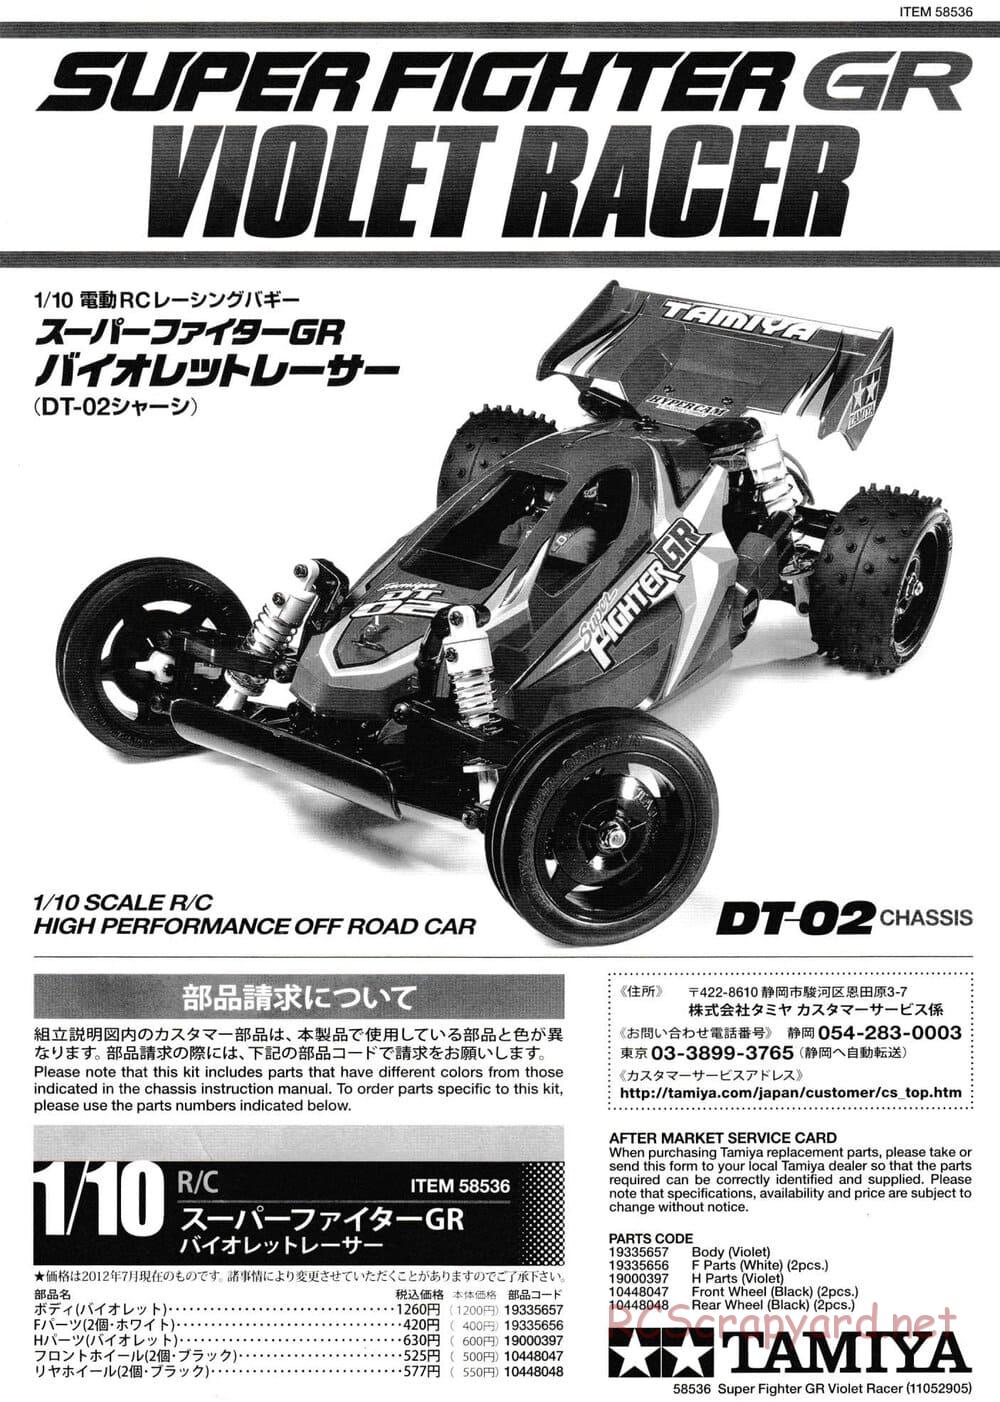 Tamiya - Super Fighter GR (Violet Racer) - DT-02 Chassis - Manual - Page 1